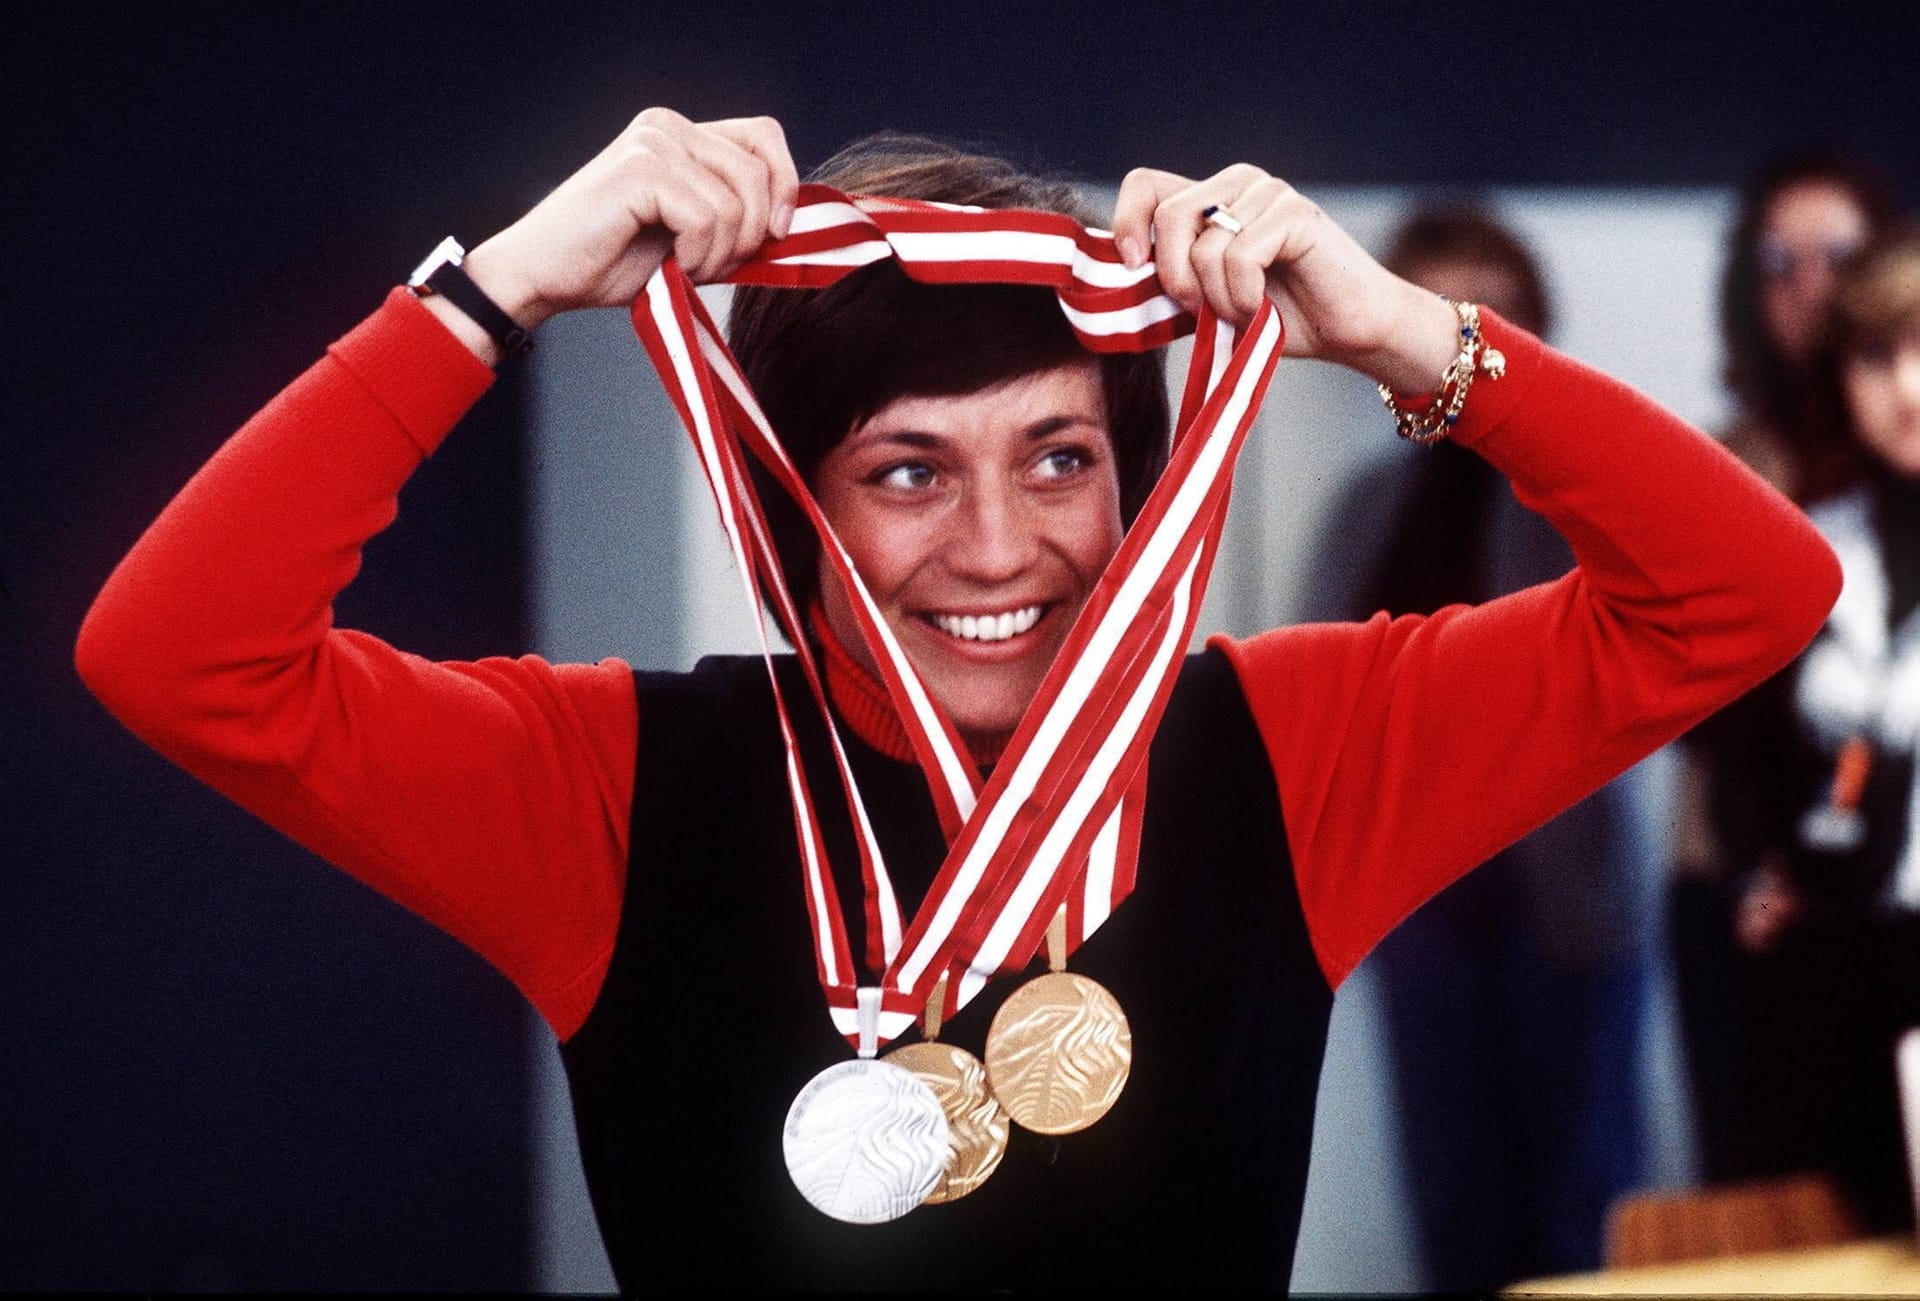 Rosi Mittermaier 1976 in Innsbruck: Dort holt sie neben Gold im Slalom auch Gold in der Abfahrt.